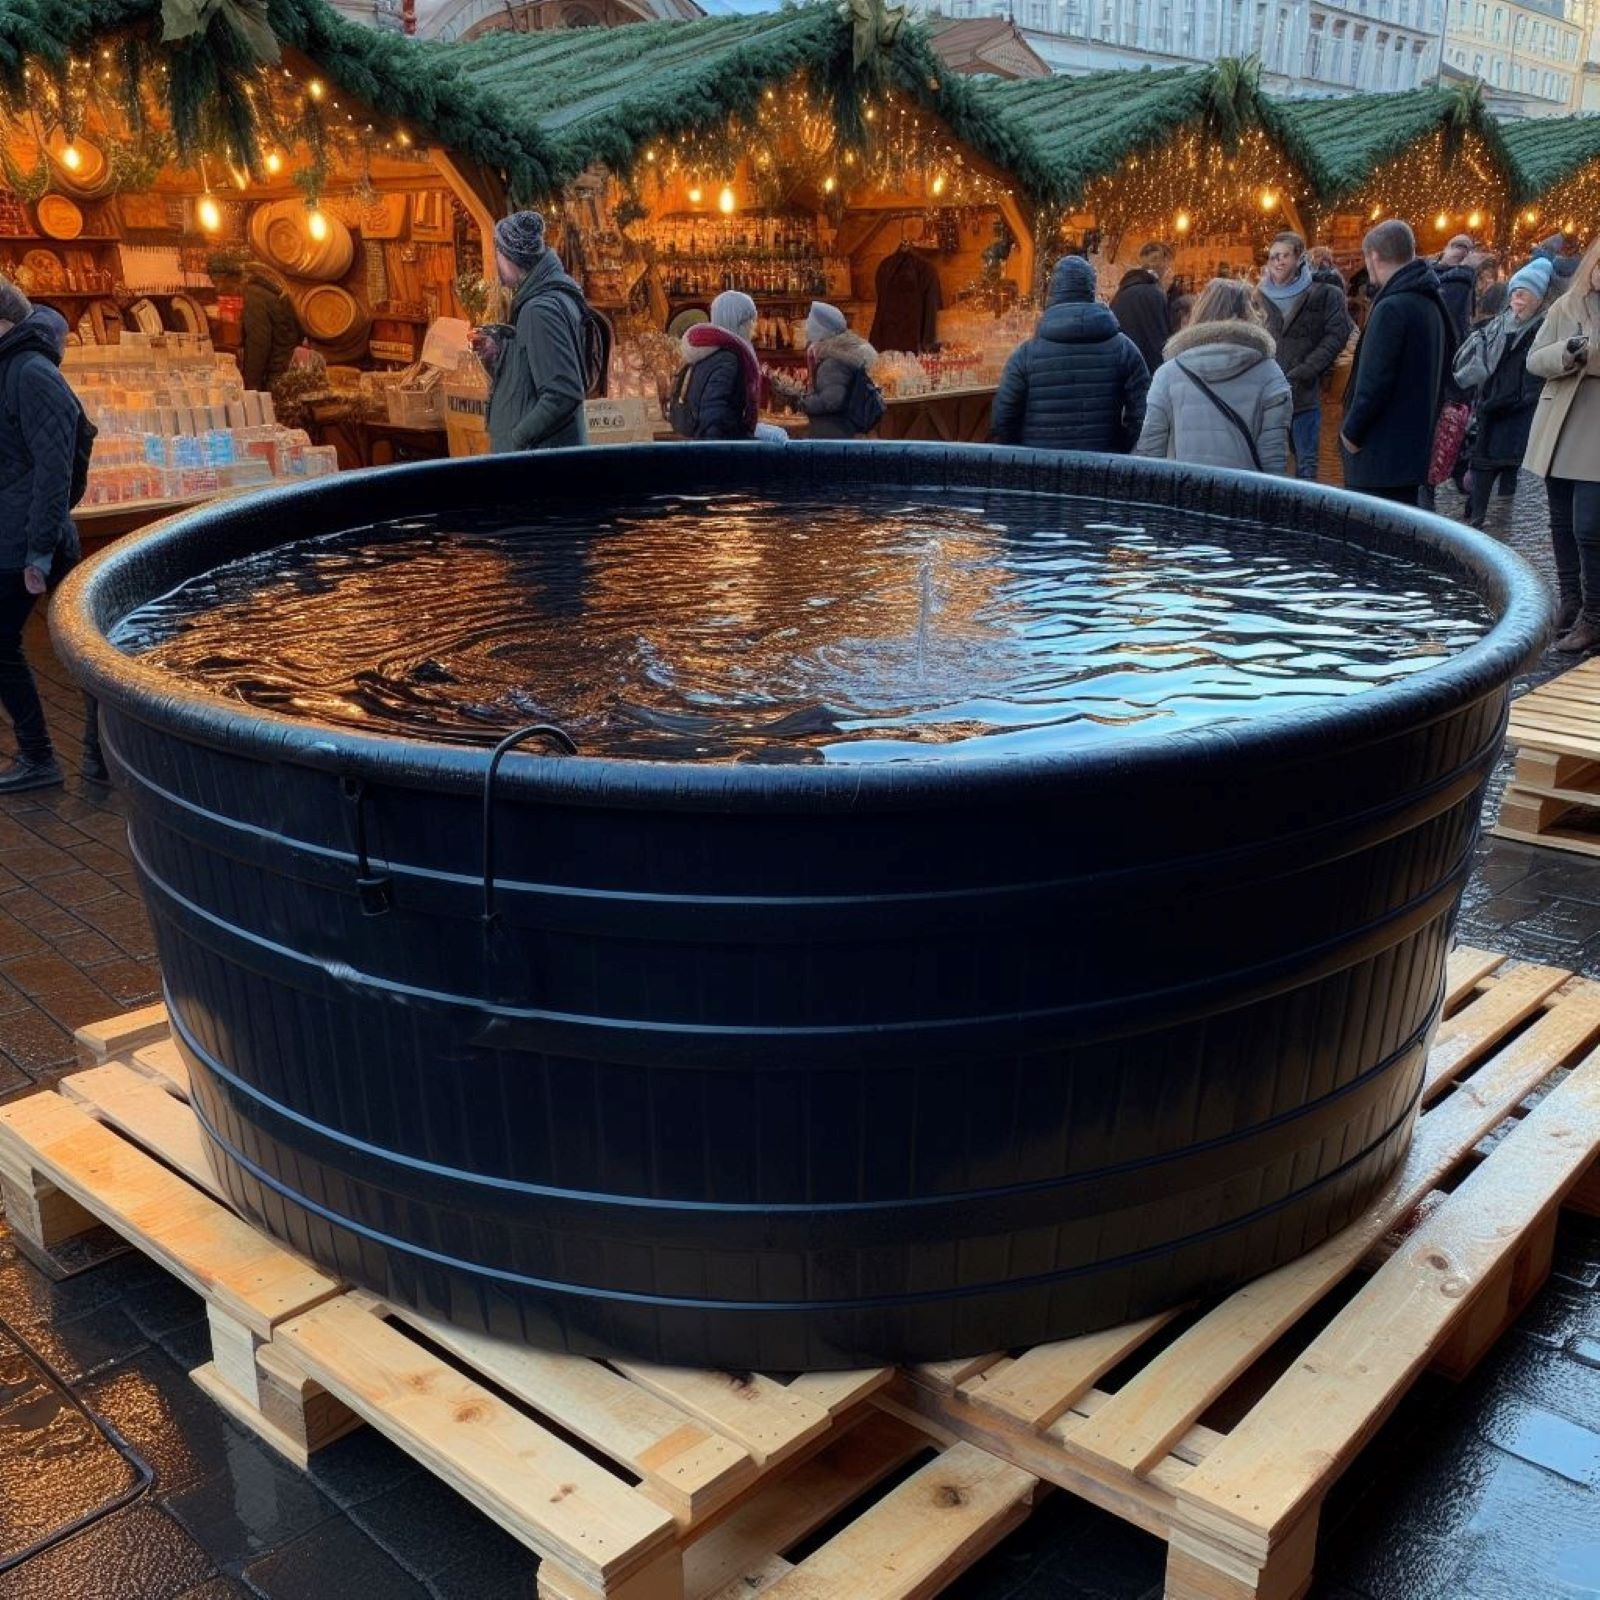 Některé obchody raději dováží vánoční kapry z Ruska a dalších zemí, tvrdí Rybářské sdružení ČR